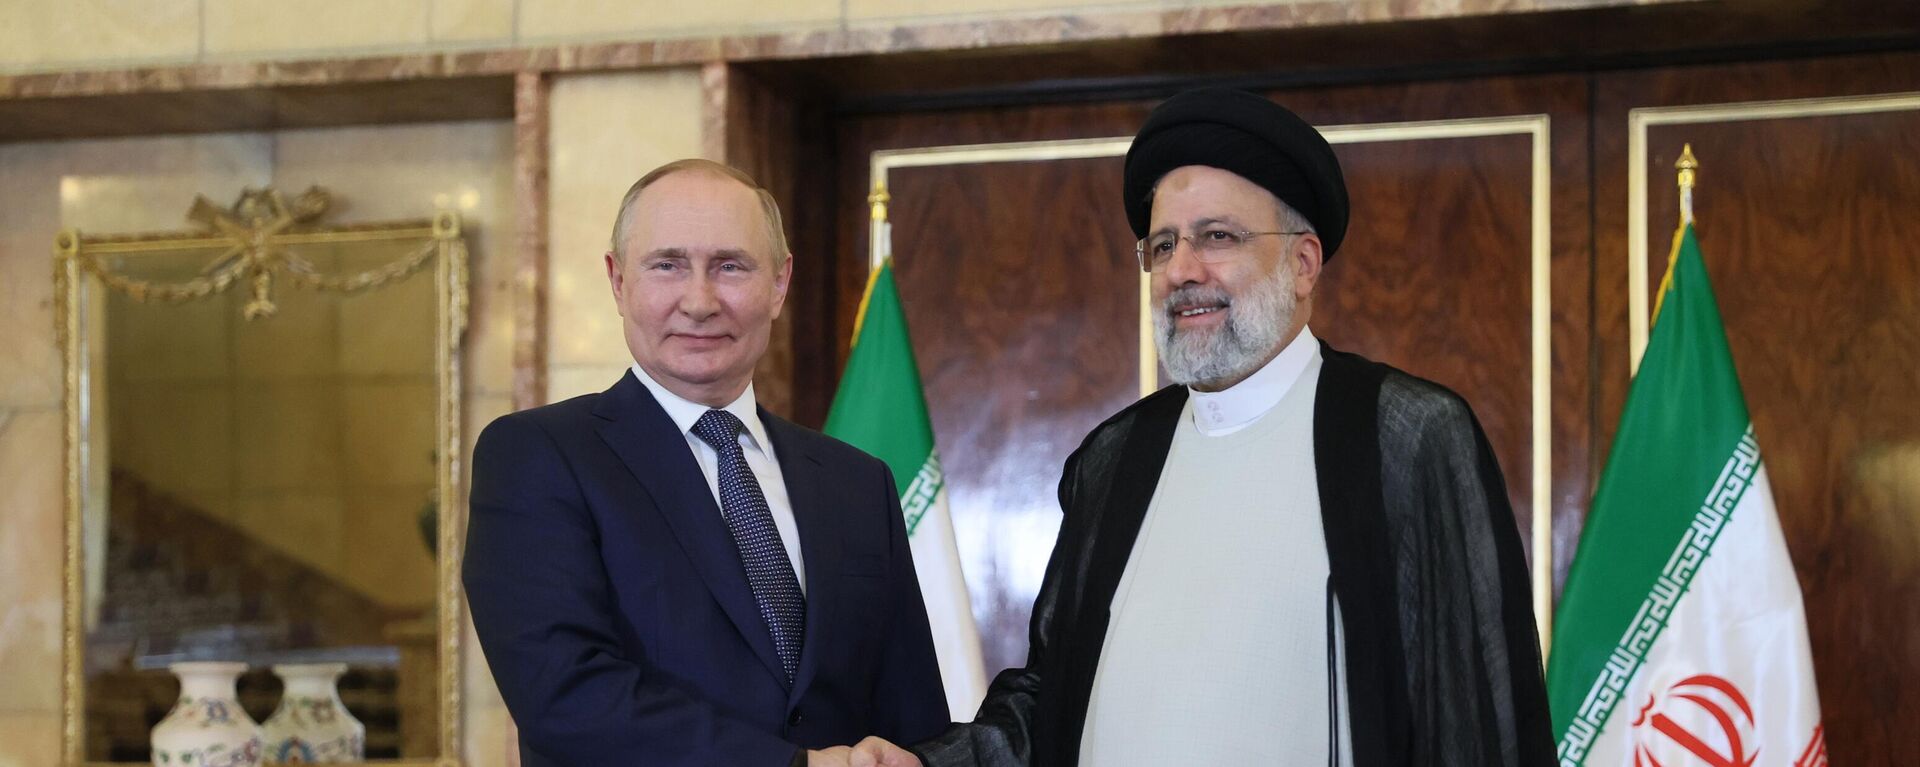 Presidente russo, Vladimir Putin (à esquerda), se reúne com o presidente iraniano, Ebrahim Raisi, em Teerã, em 19 de julho de 2022 - Sputnik Brasil, 1920, 19.07.2022